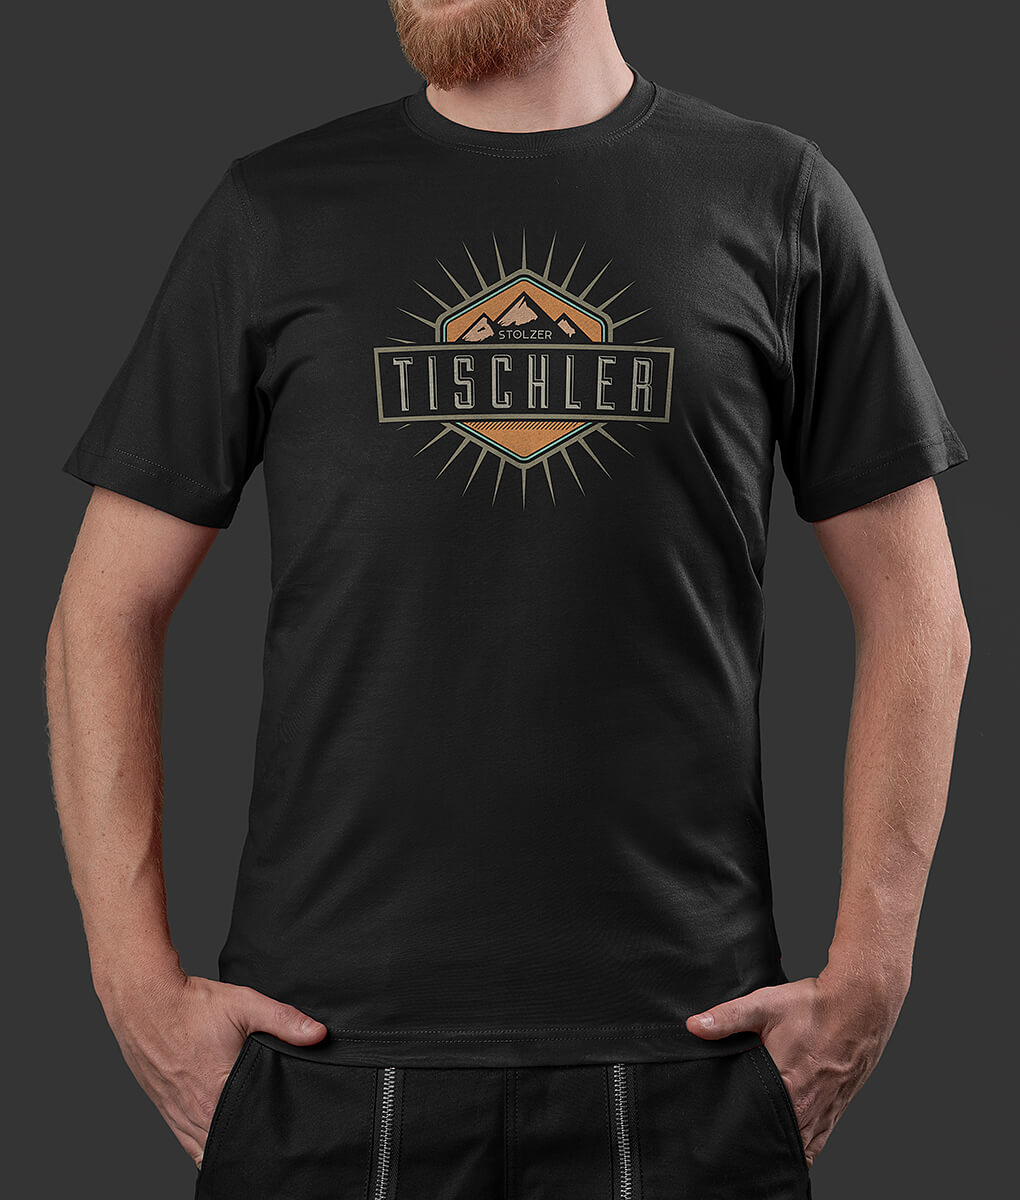 T-Shirt Raphael Mountains Tischler Brust schwarz L